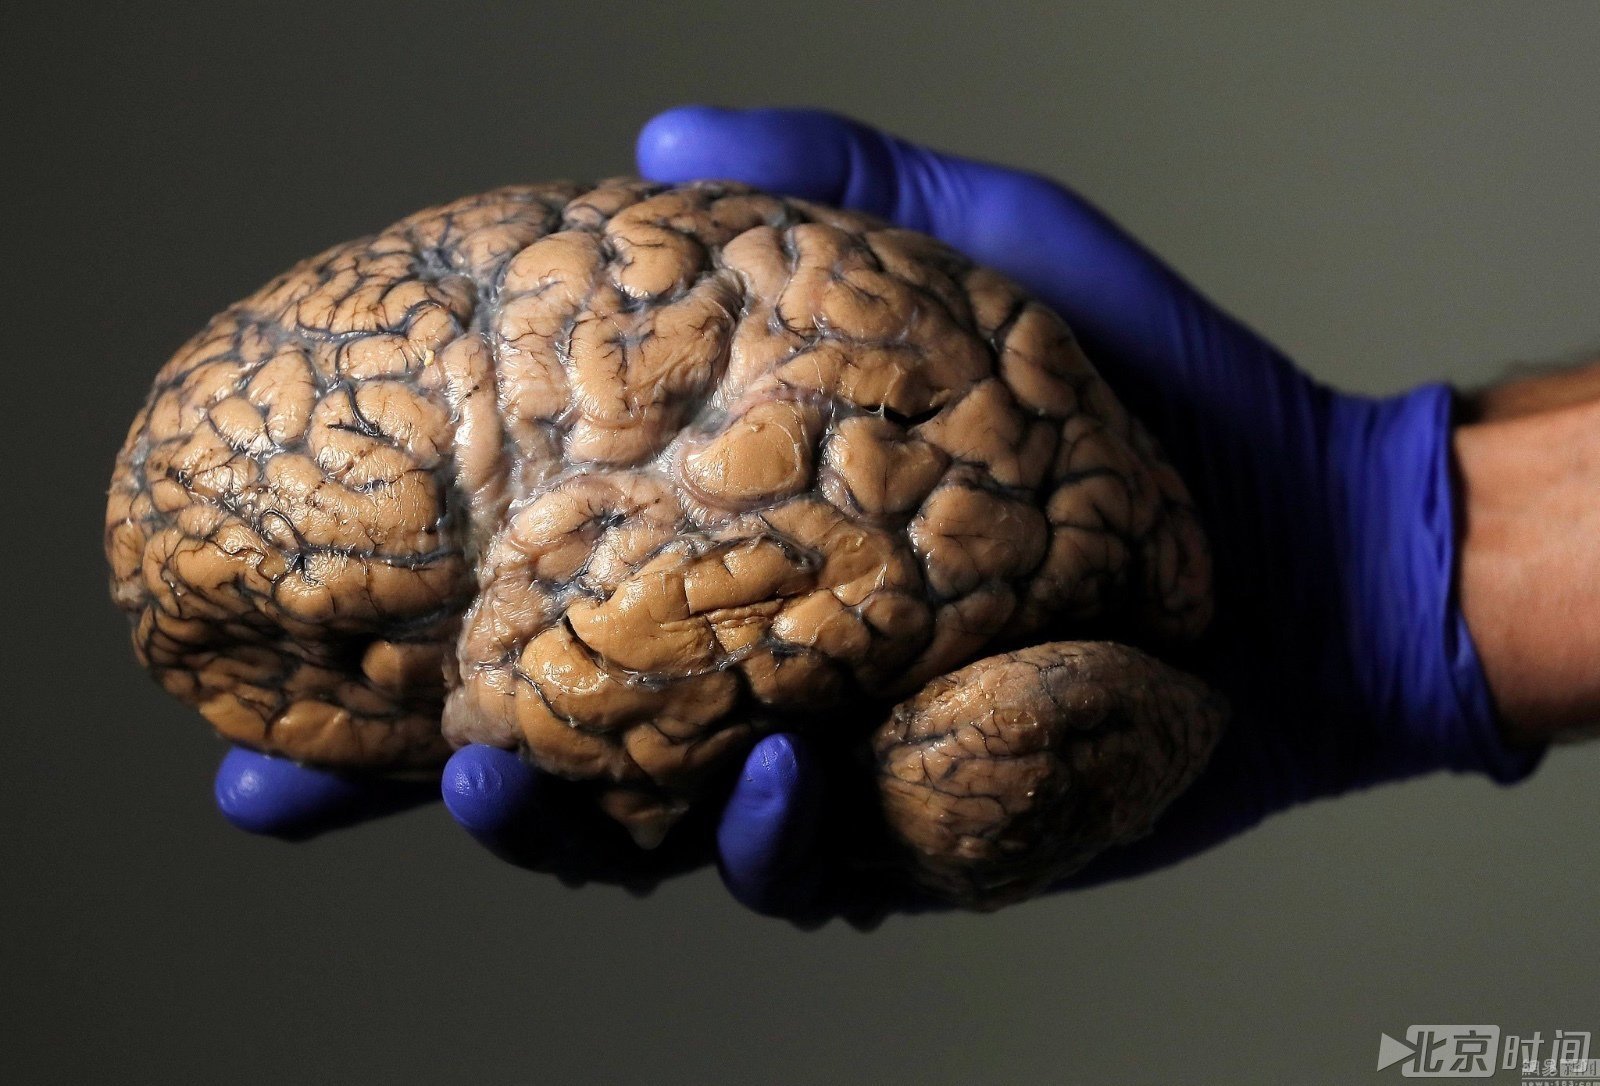 科学怪咖钟爱最强大脑!陈列三千多颗人脑标本